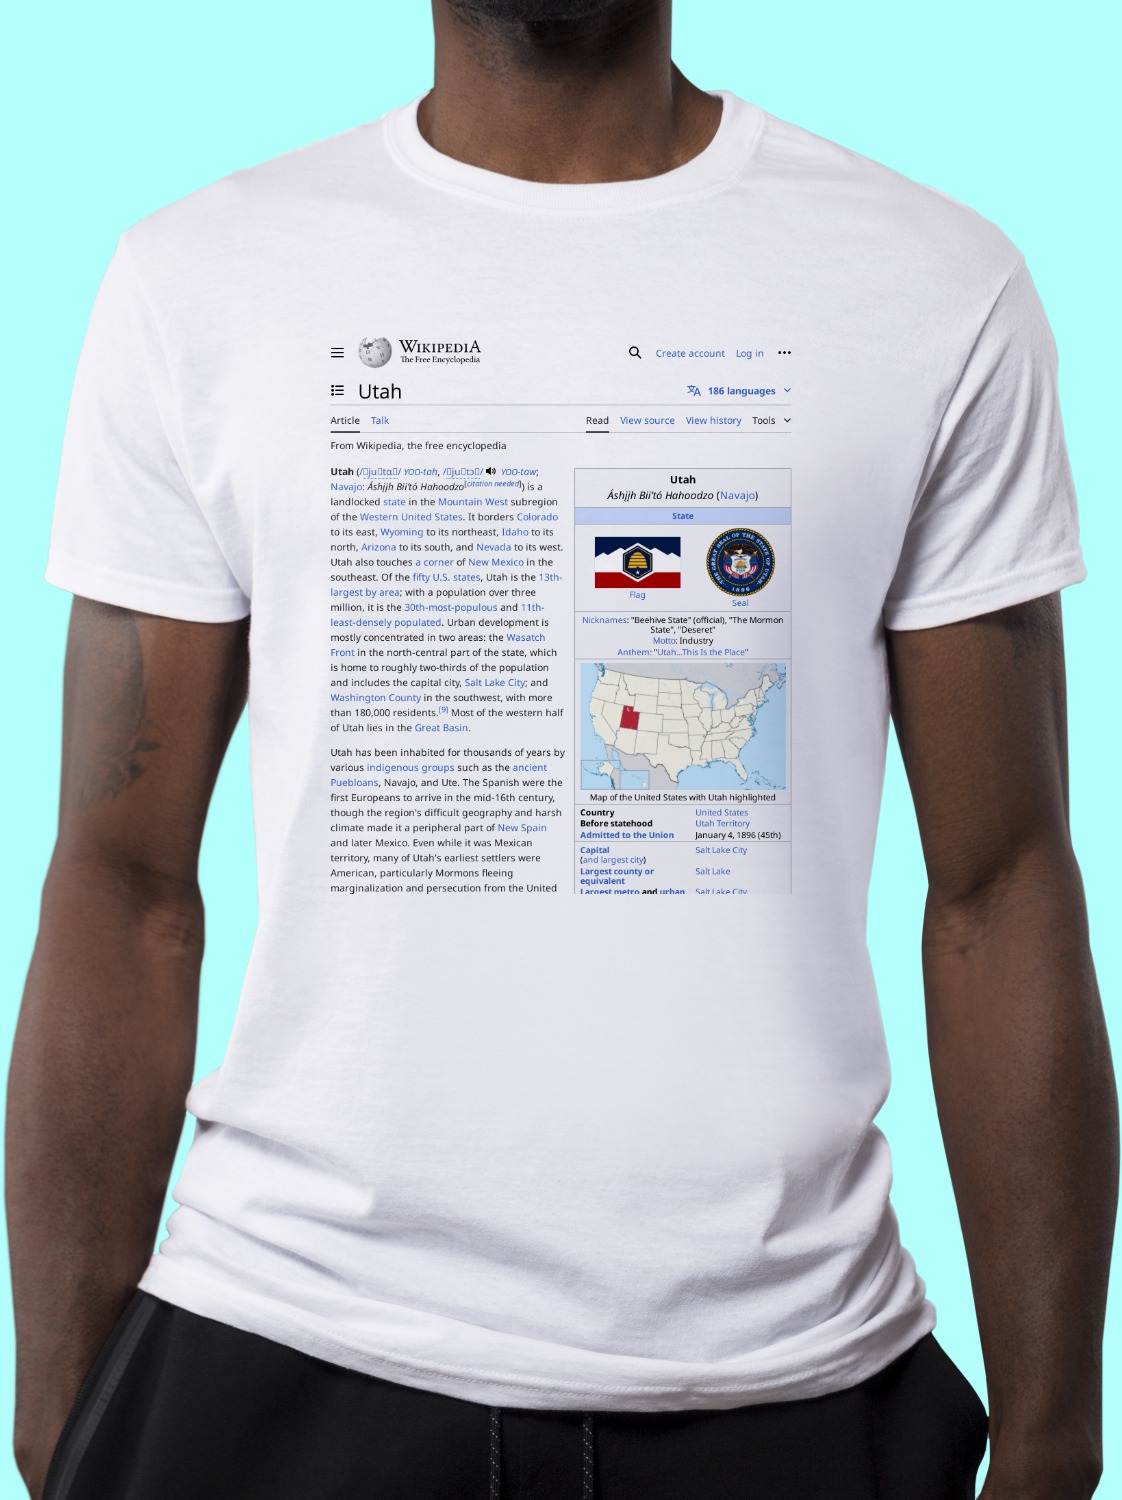 Utah Wikipedia Shirt